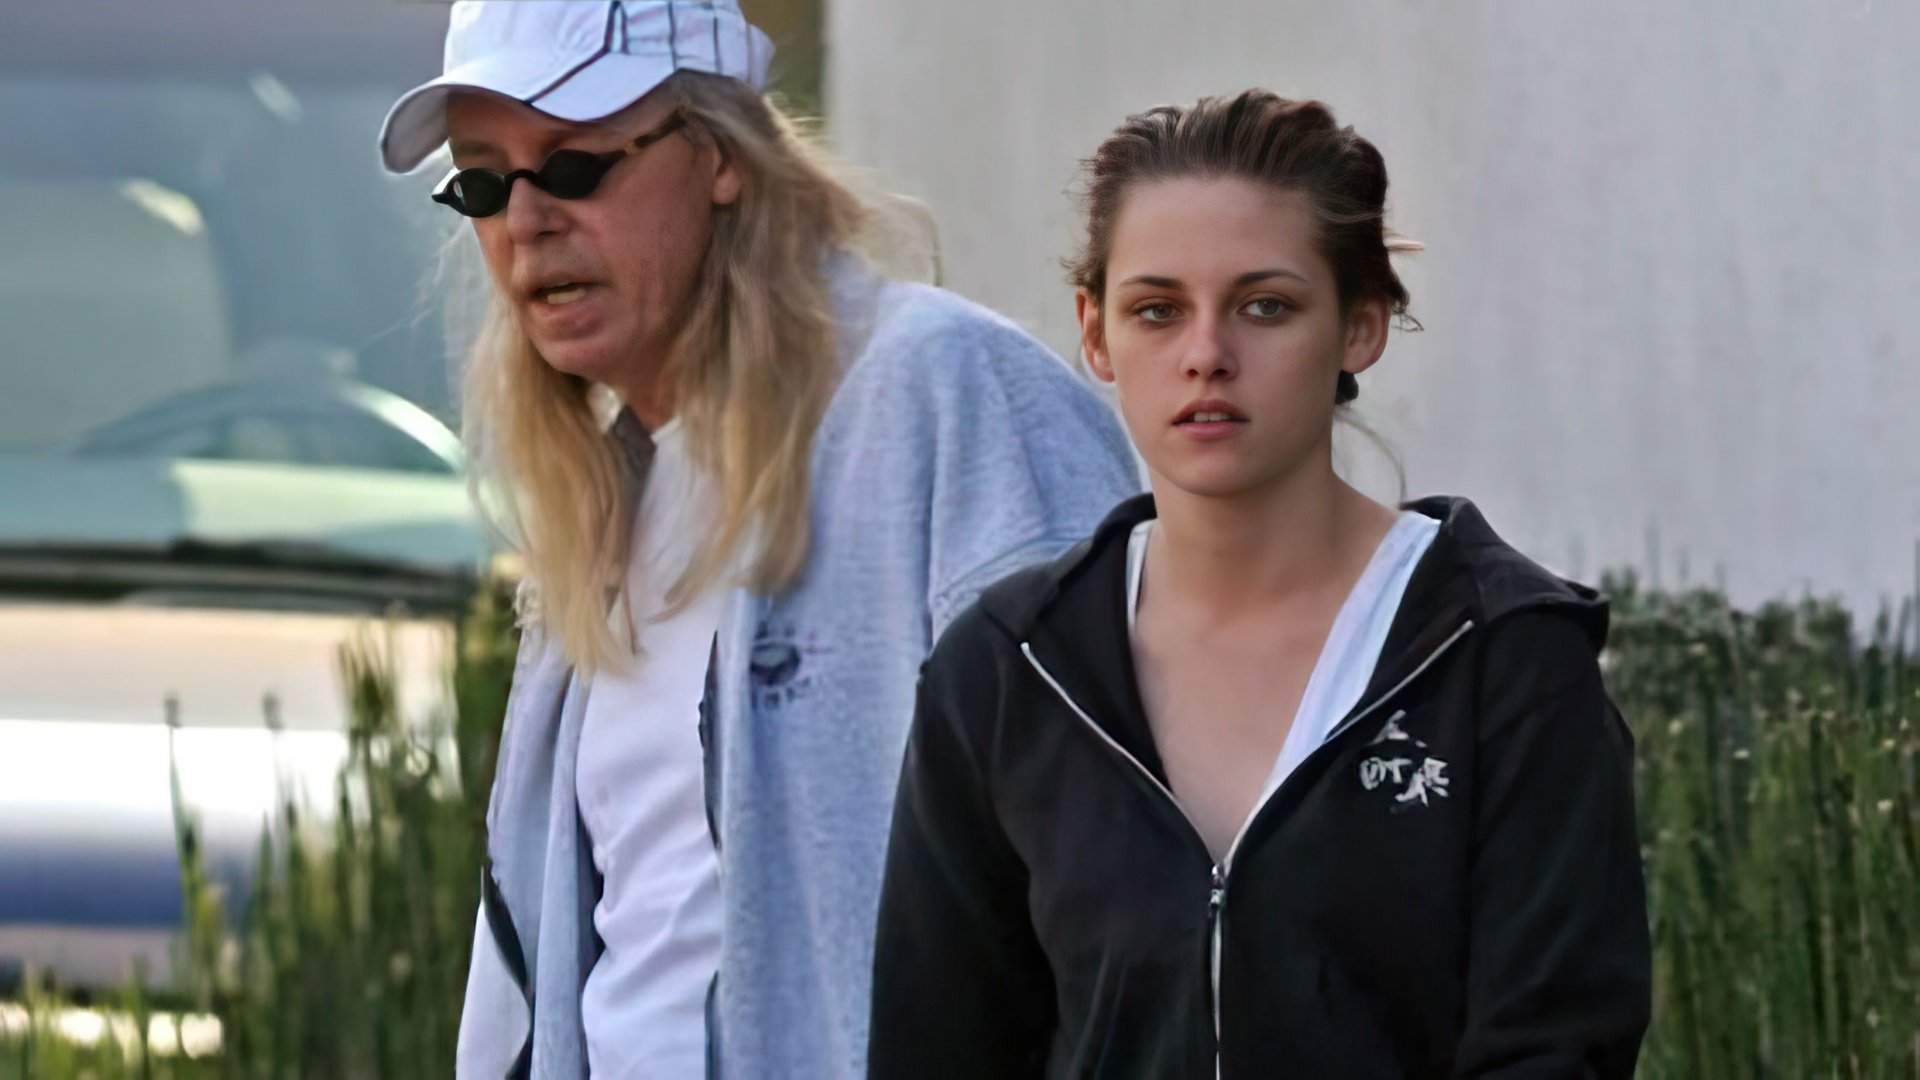 Kristen Stewart with her father